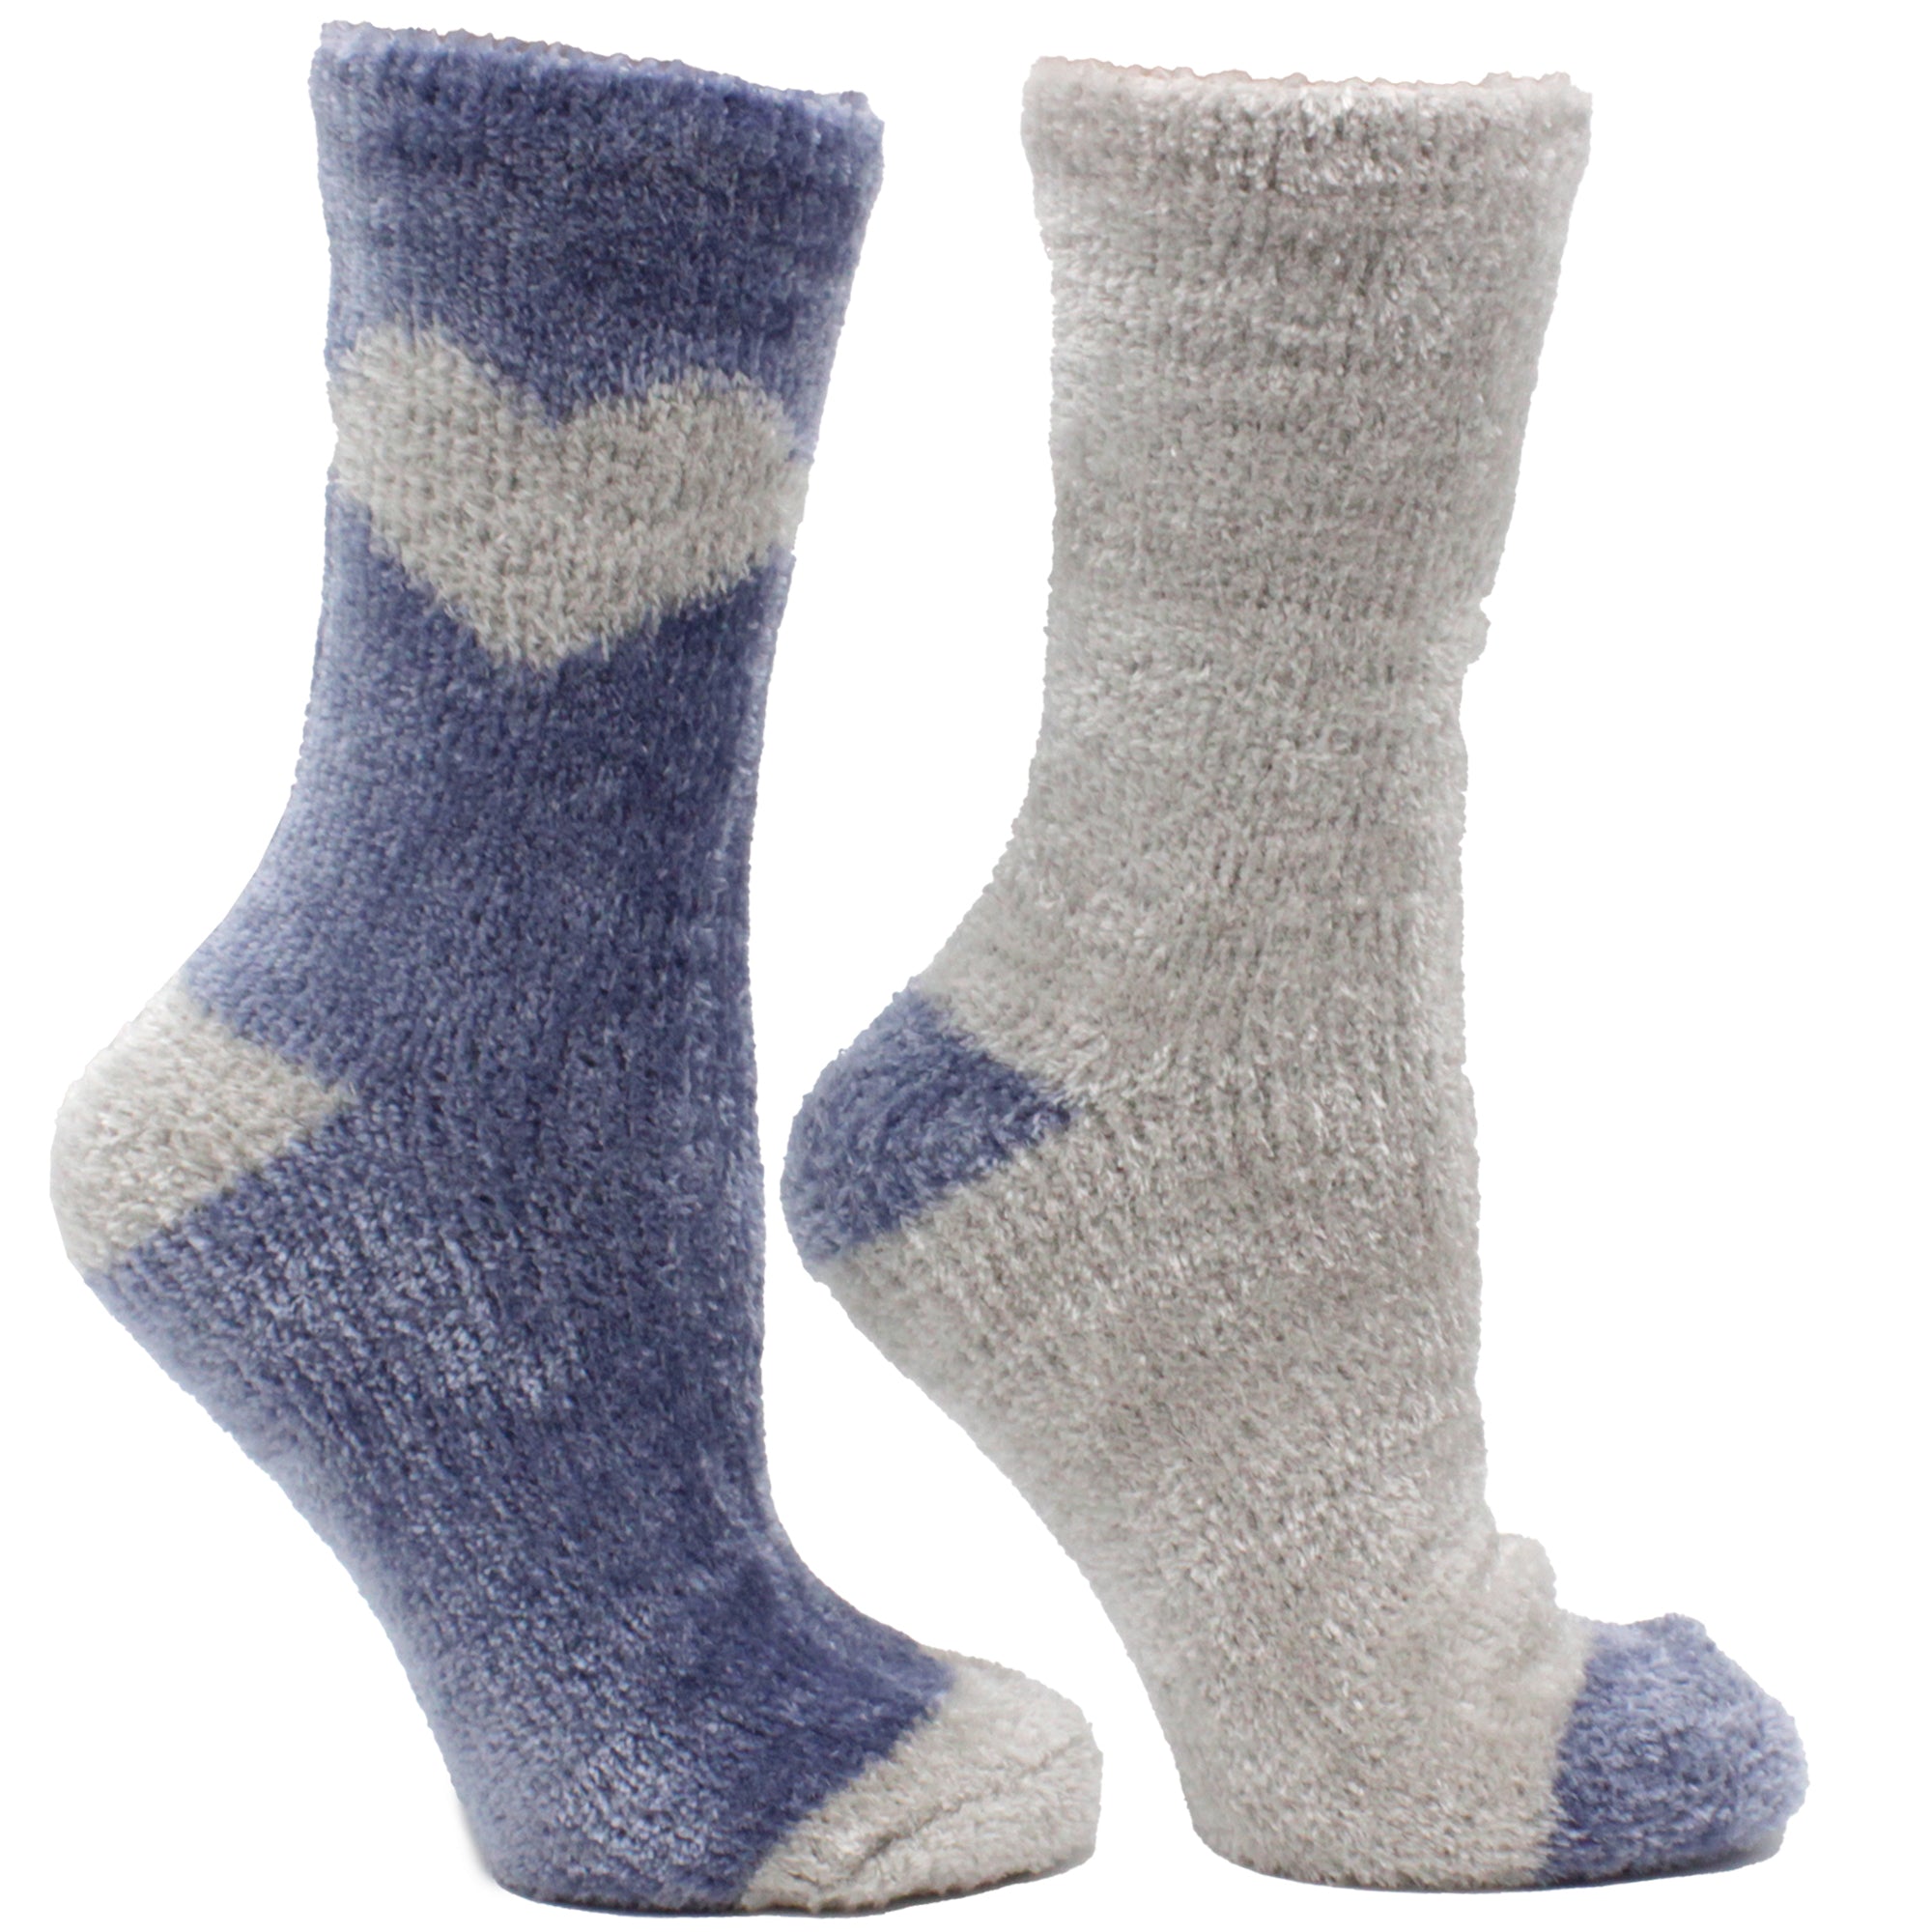 Premium Slipper Socks Pair Pack Velvet,Rose and Shea Butter Infused - Sparkling, - Sparkling grape | MinxNY